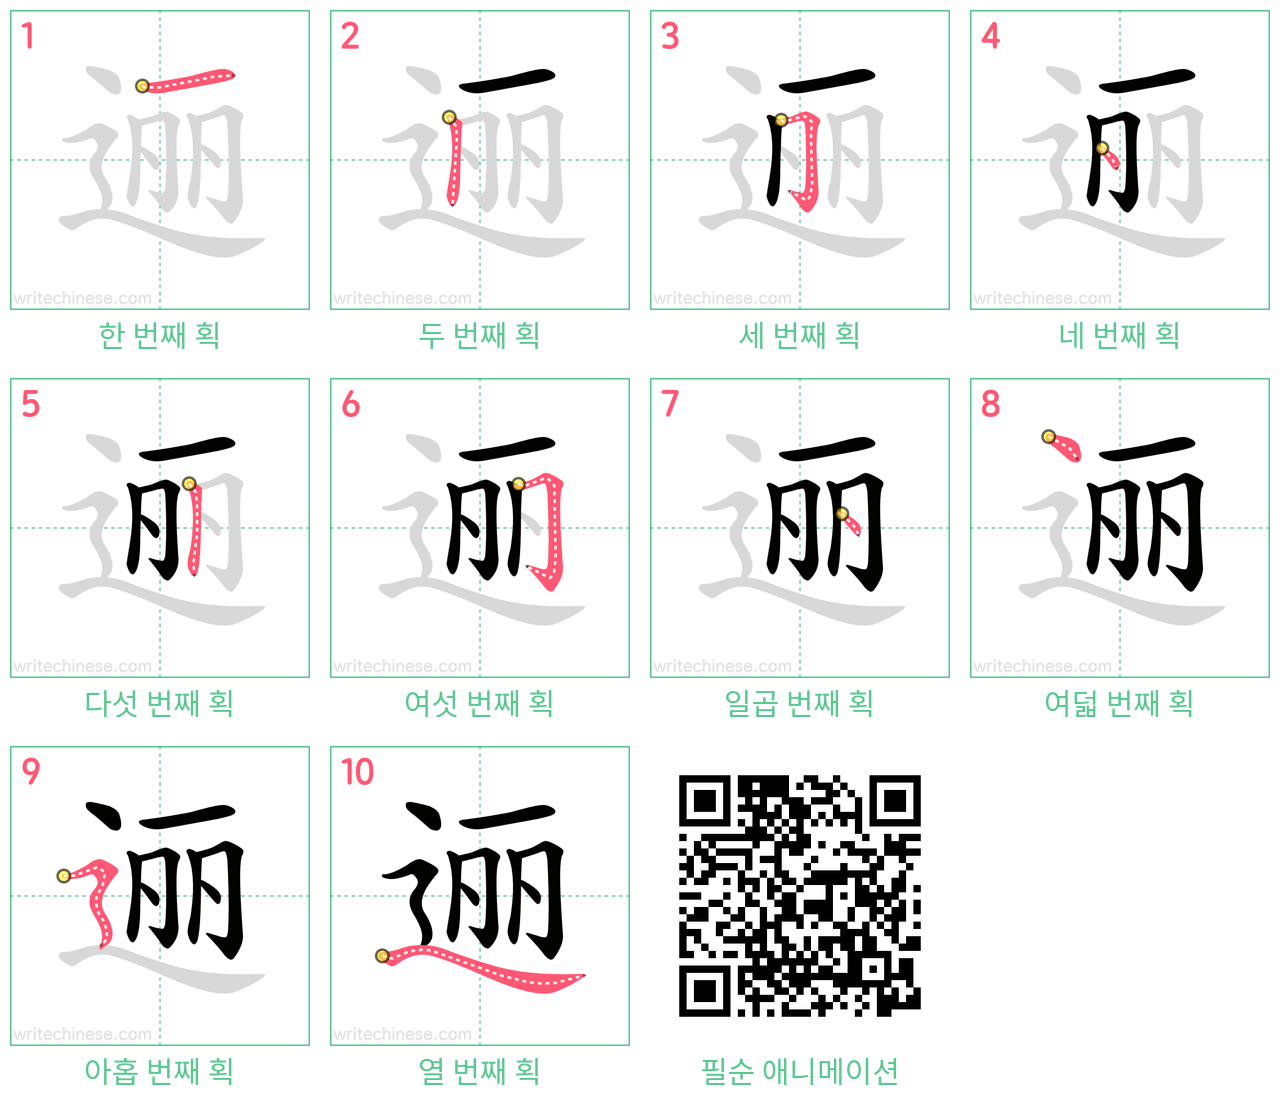 逦 step-by-step stroke order diagrams